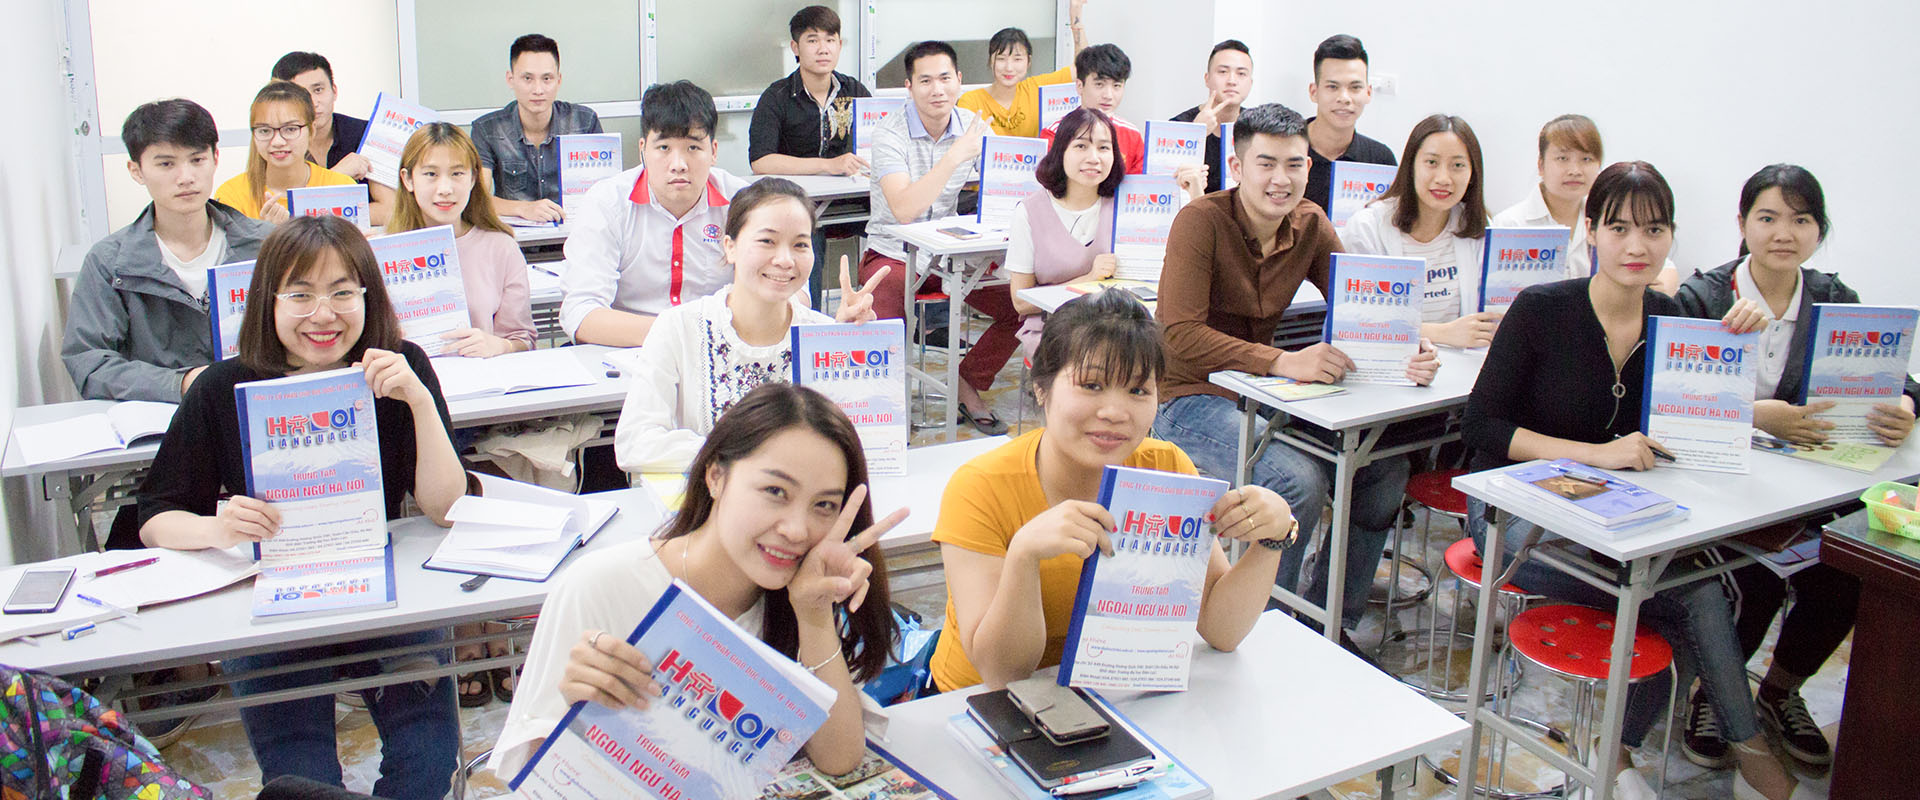 Trung tâm Ngoại ngữ Hà Nội - Trung tâm dạy tiếng Trung uy tín tại Hà Nội